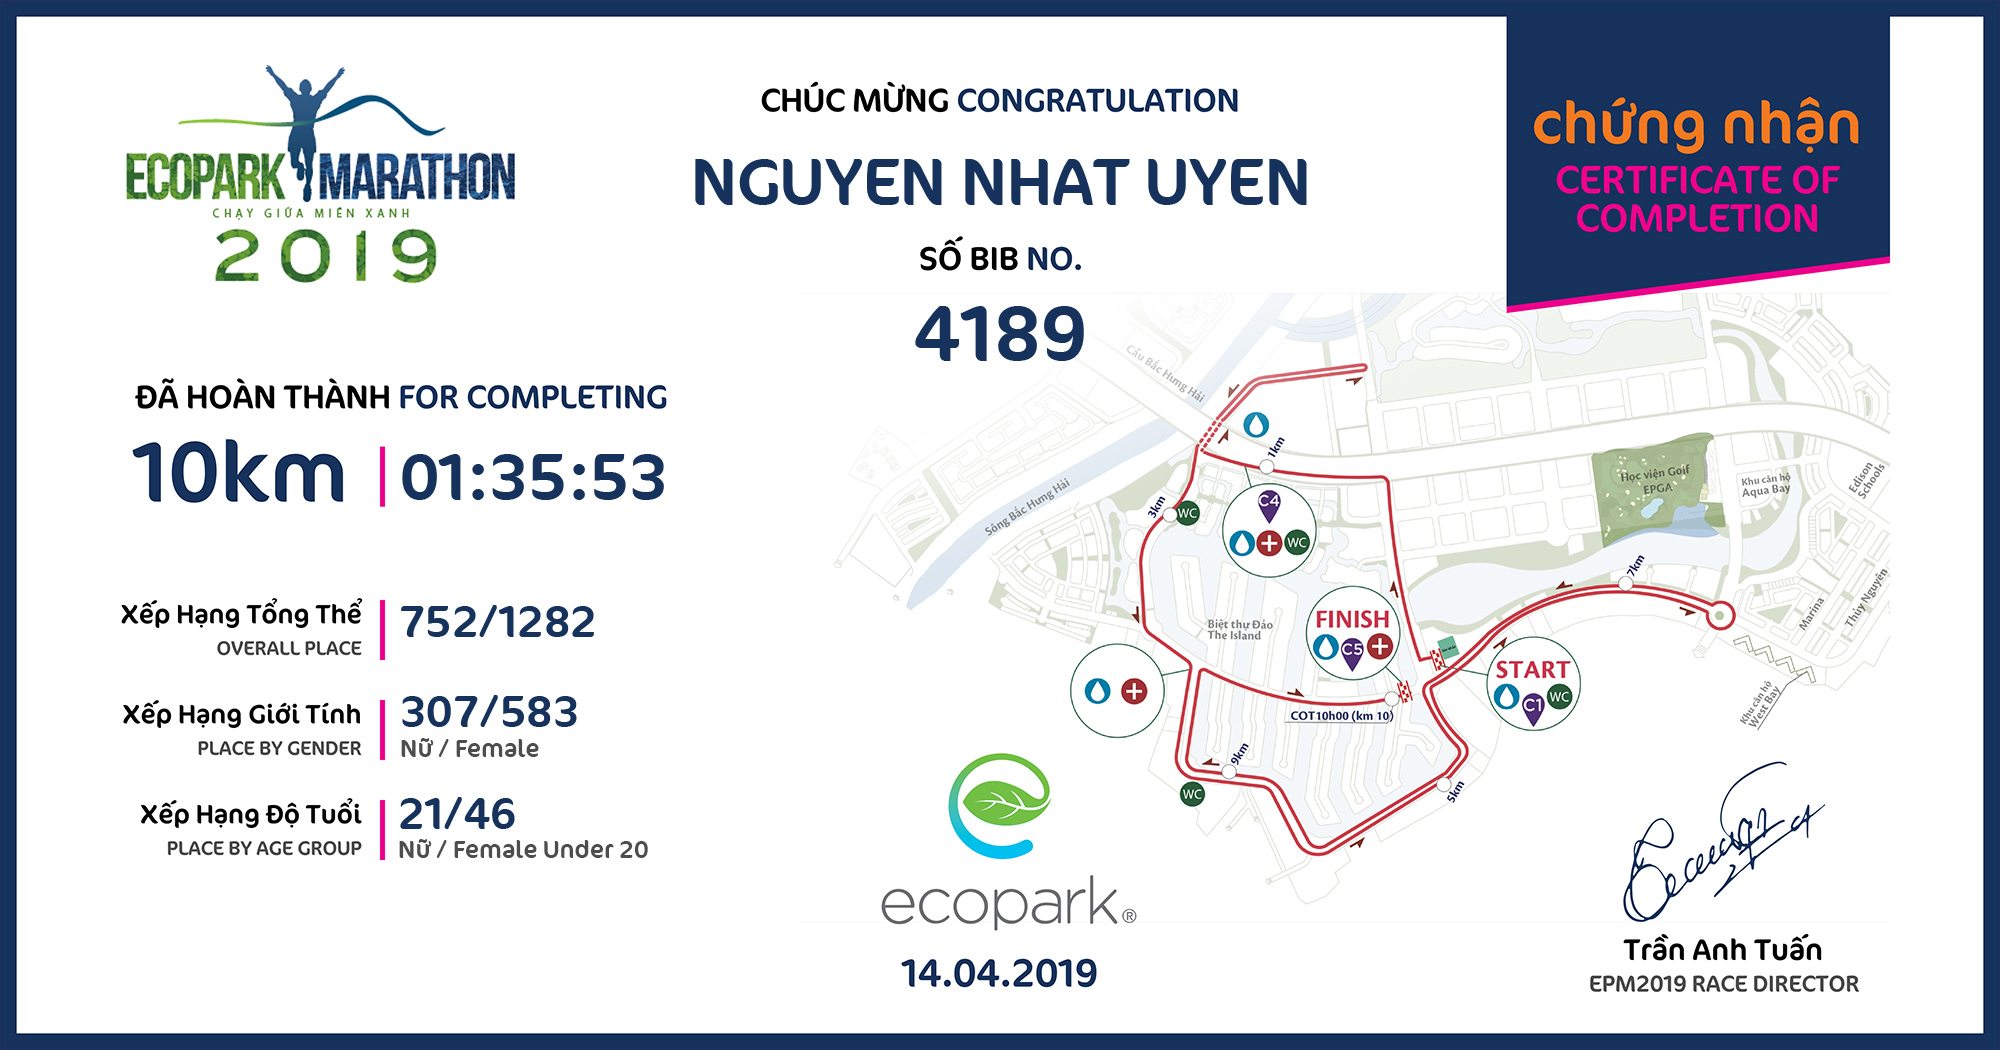 4189 - Nguyen Nhat Uyen